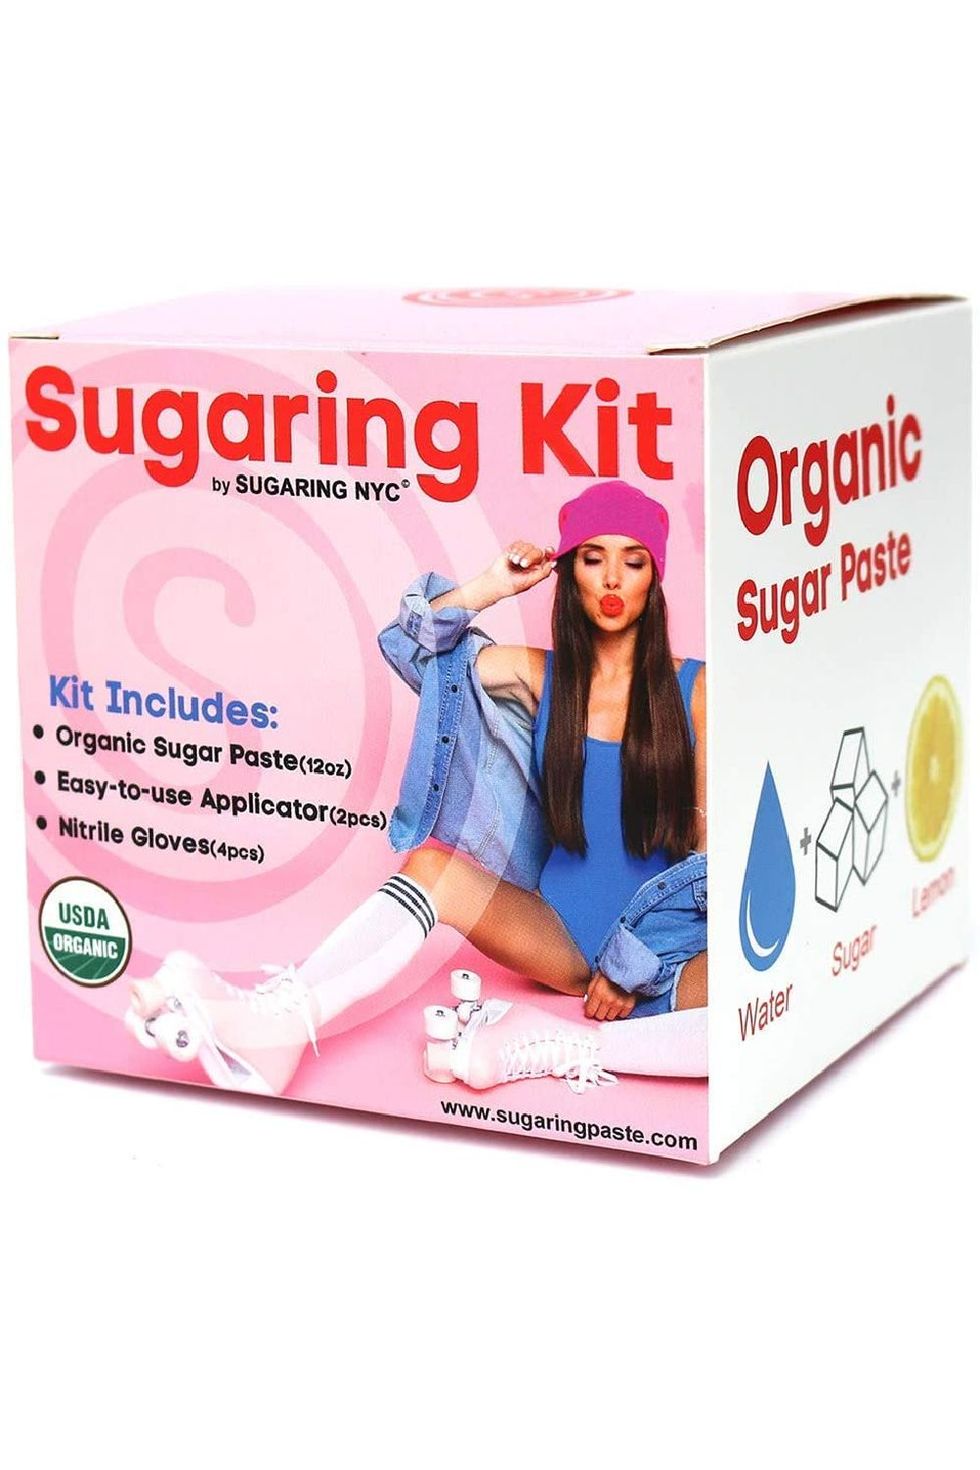 Sugaring NYC Sugaring Hair Removal Kit